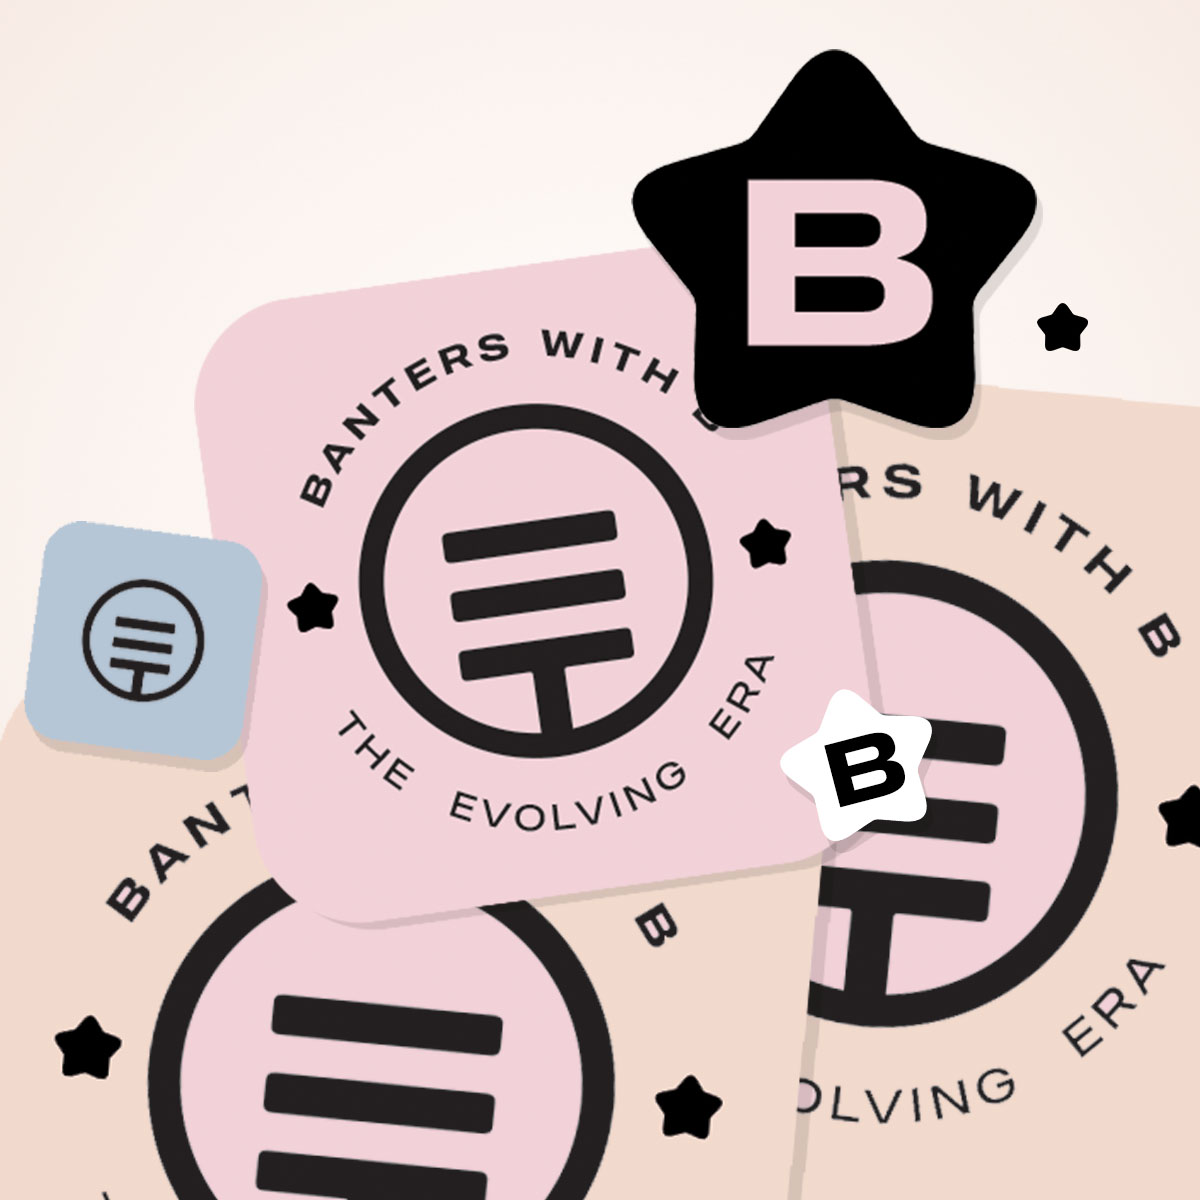 Brand identity design for Podcast Series 'Banters with b'

#Branding #BrandIdentity #BrandIdentityDesigner #PodcastBranding